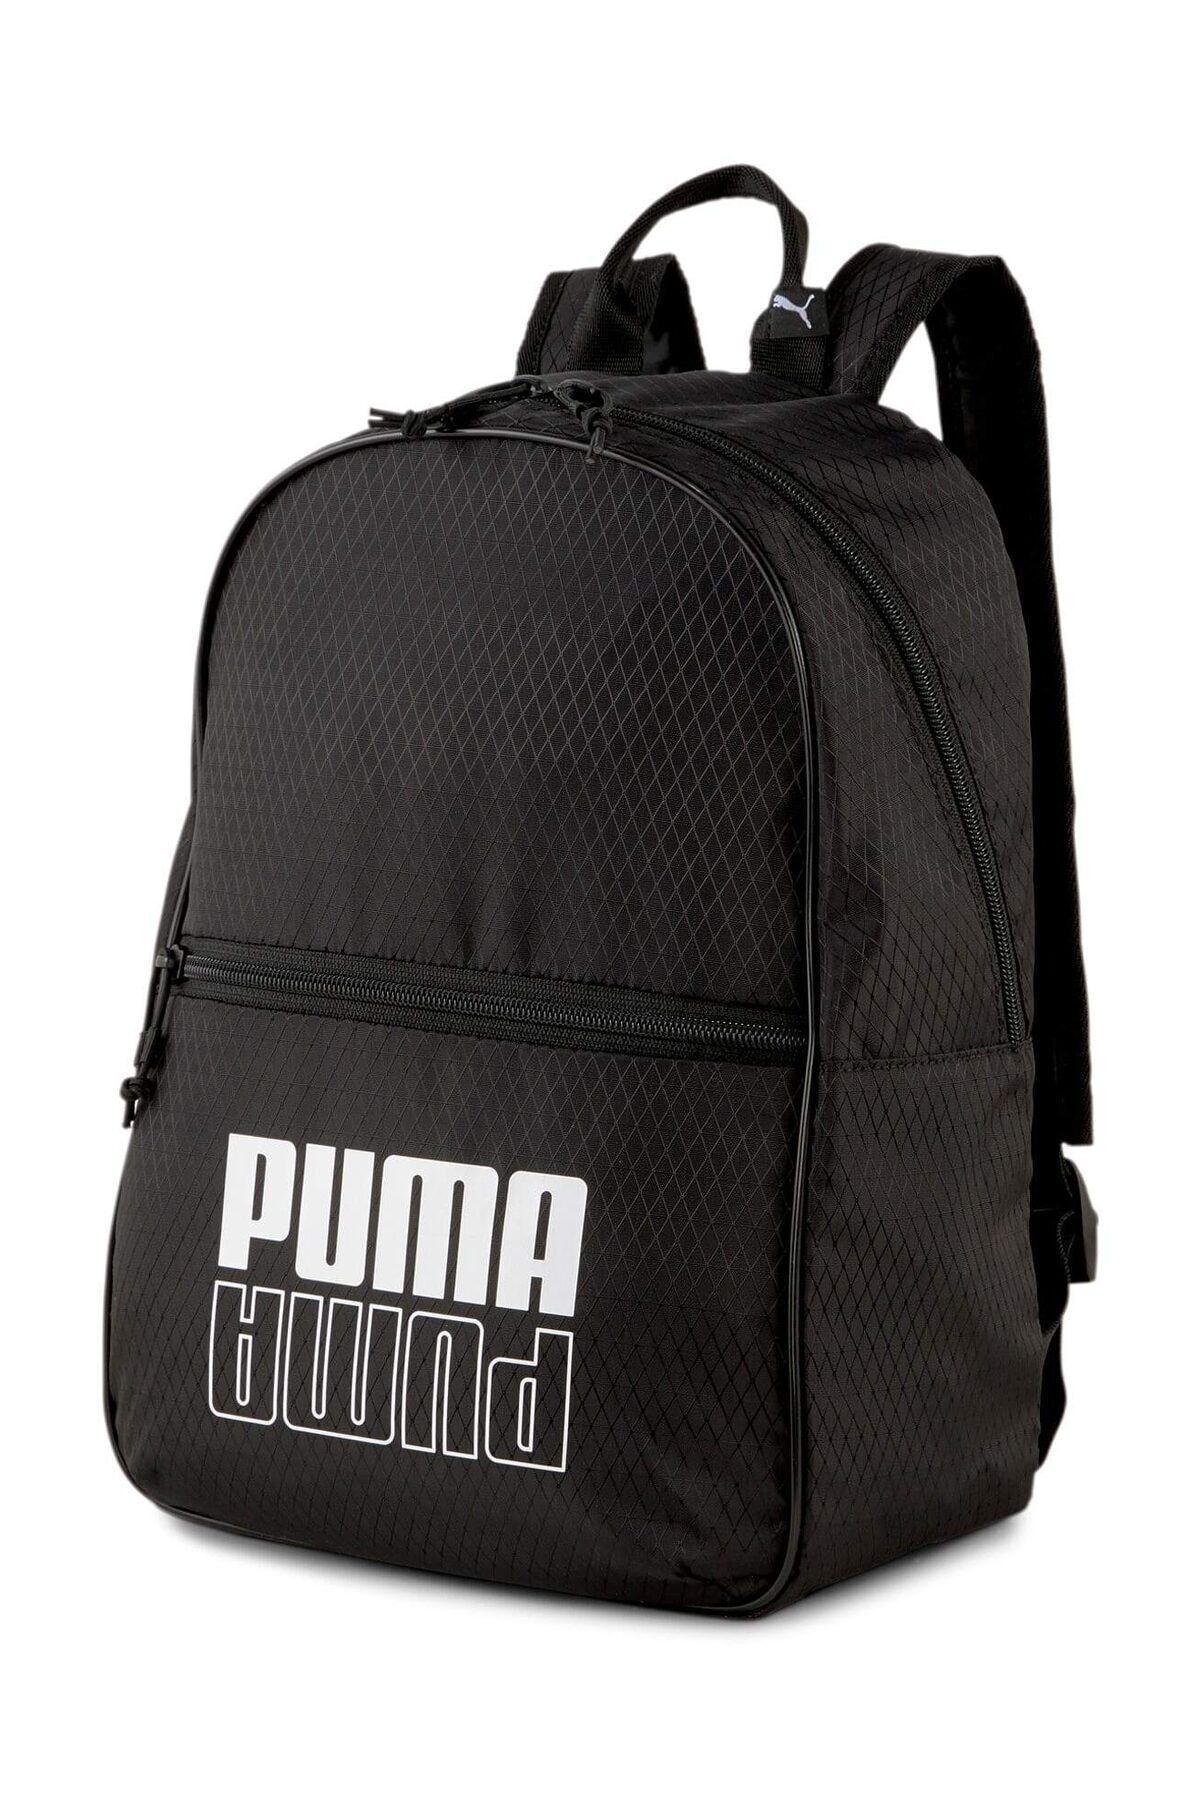 Puma Core Base Küçük Sırt Çantası 07832301